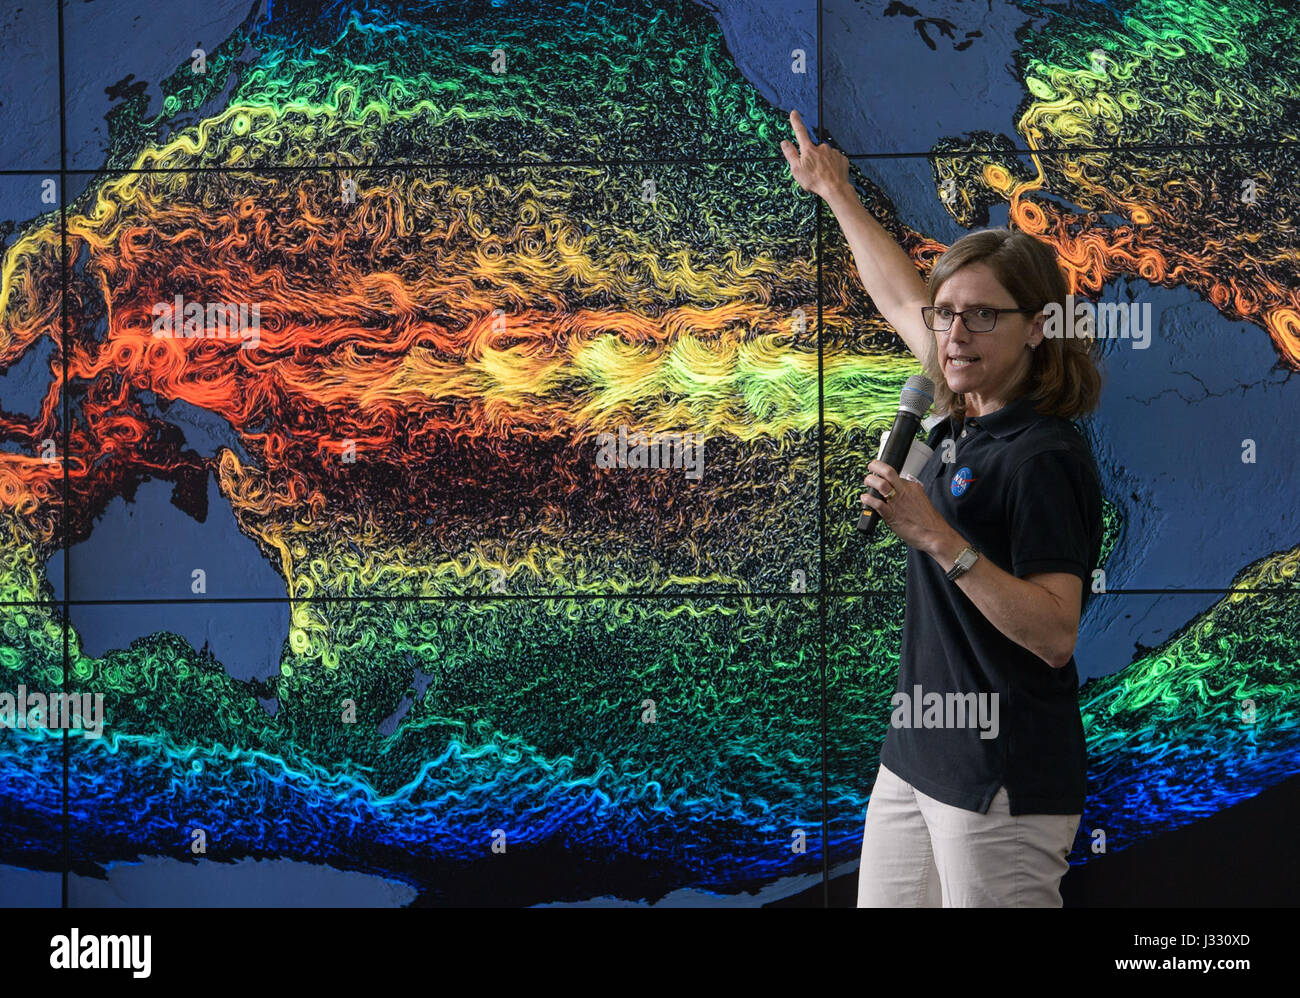 Stephanie Uz, recherche un océanographe à Goddard Spaceflight Center parle de la vie dans l'océan Pacifique, au cours de la Journée de la terre de la NASA sur l'événement le jeudi 20 avril 2017 à Union Station à Washington, D.C. Banque D'Images